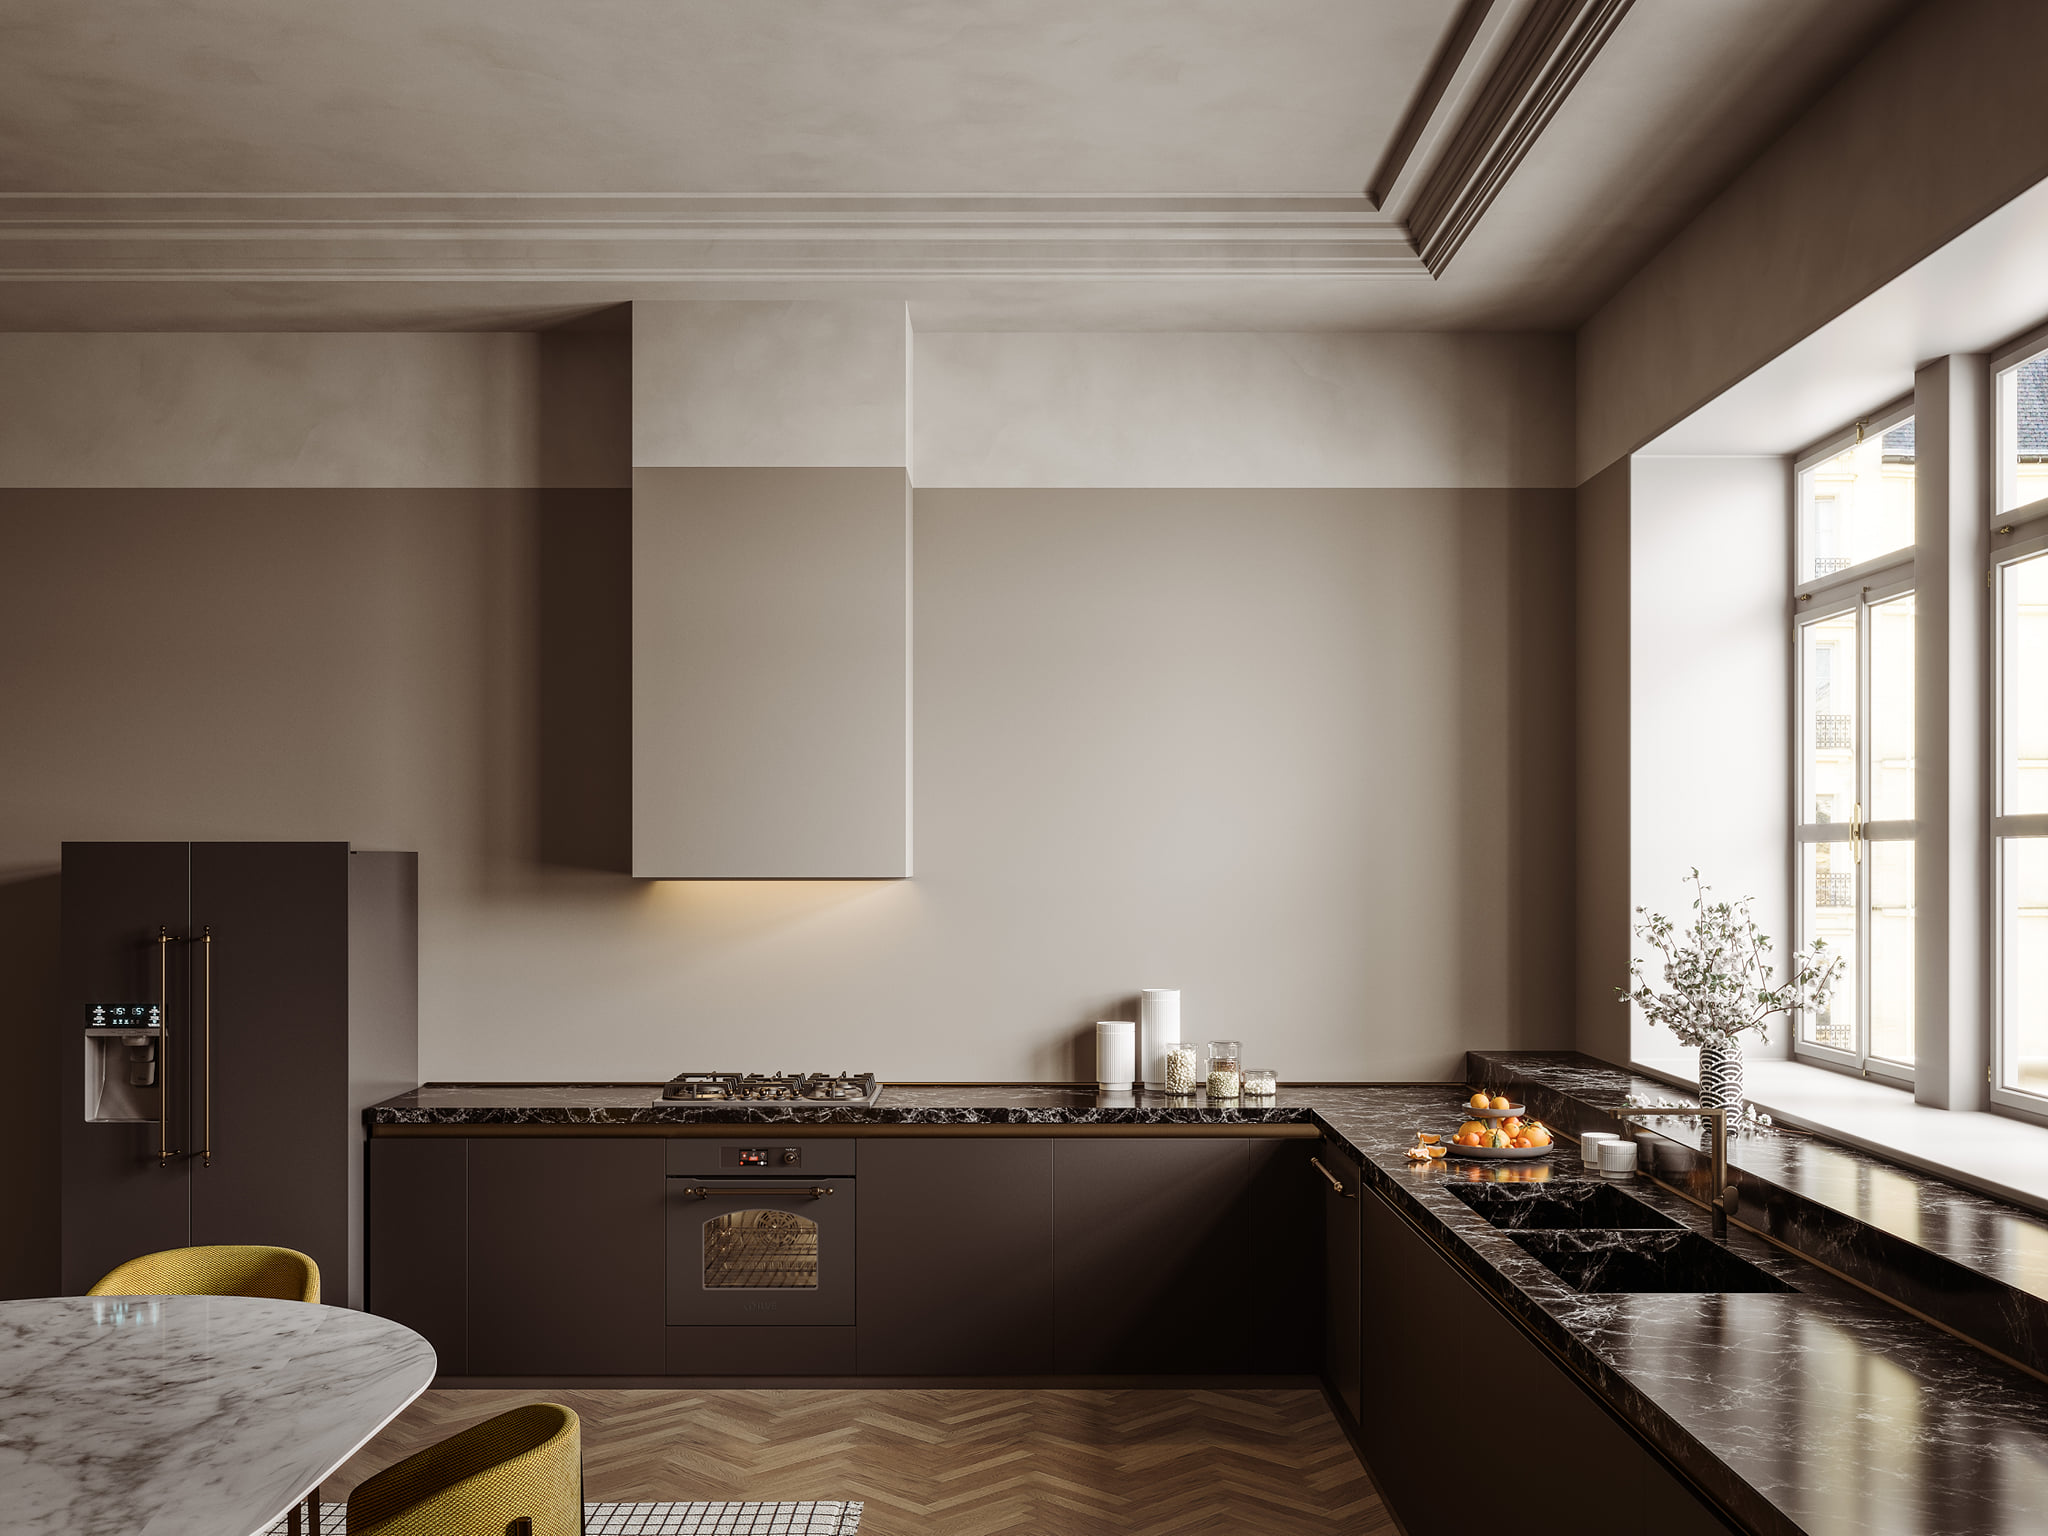 Foto : Klassieke keuken voorzien van luxe ILVE inbouwapparatuur.